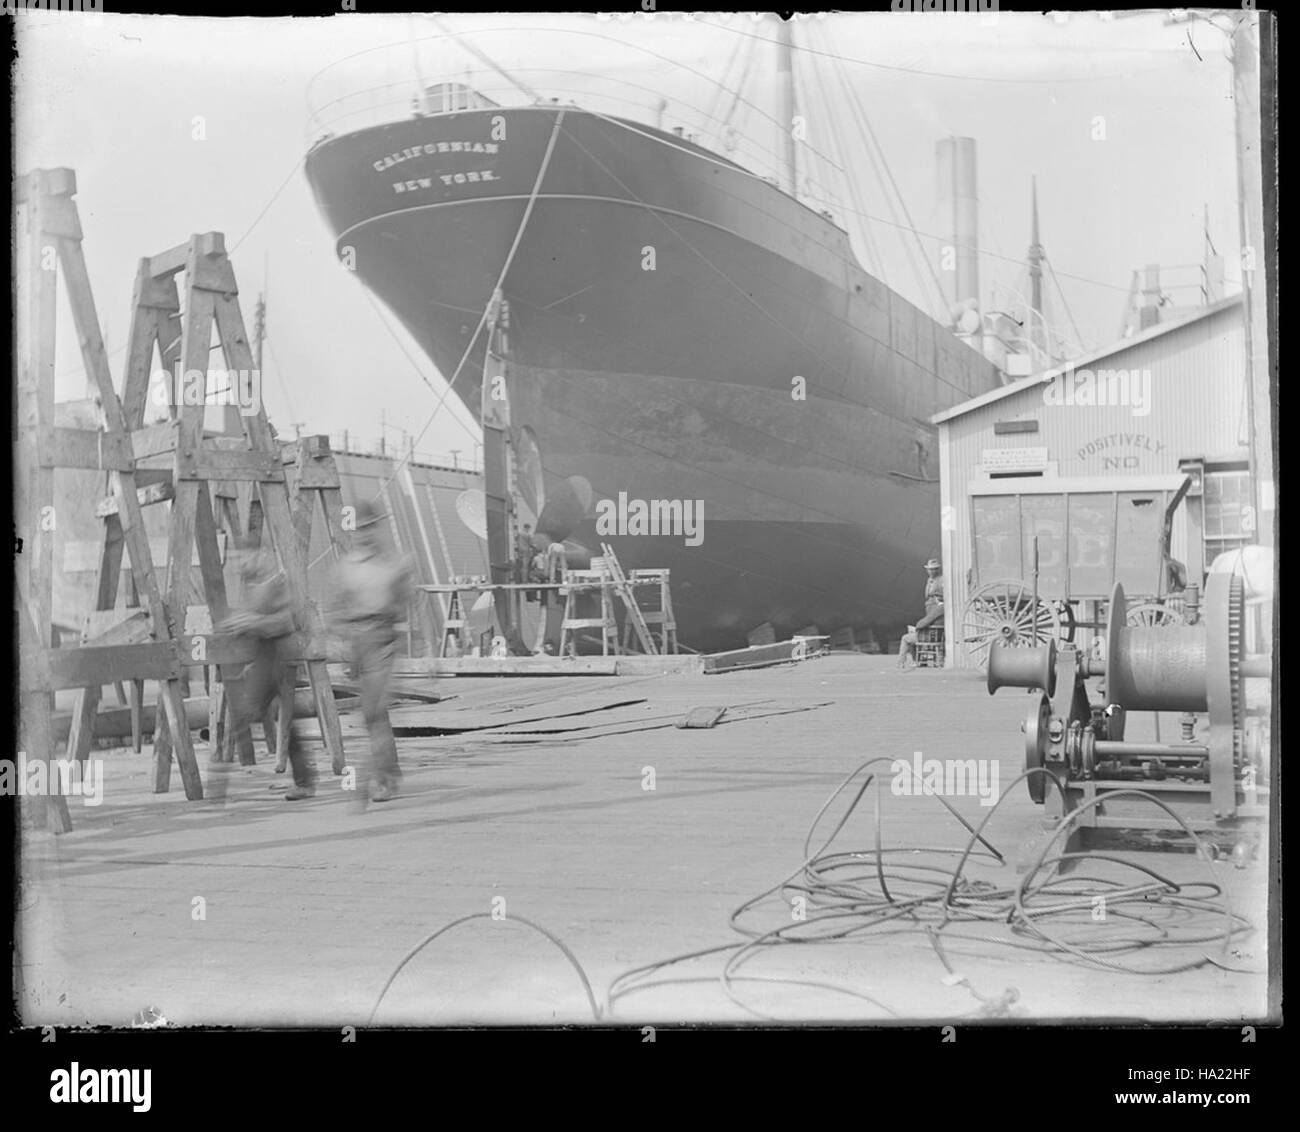 Sfmaritimenps collections 21855328105 californien (construit 1900 ; navire de charge) en cale sèche au niveau de l'Union Iron Works, l'arrière en vue, entre 1900-1918 Banque D'Images